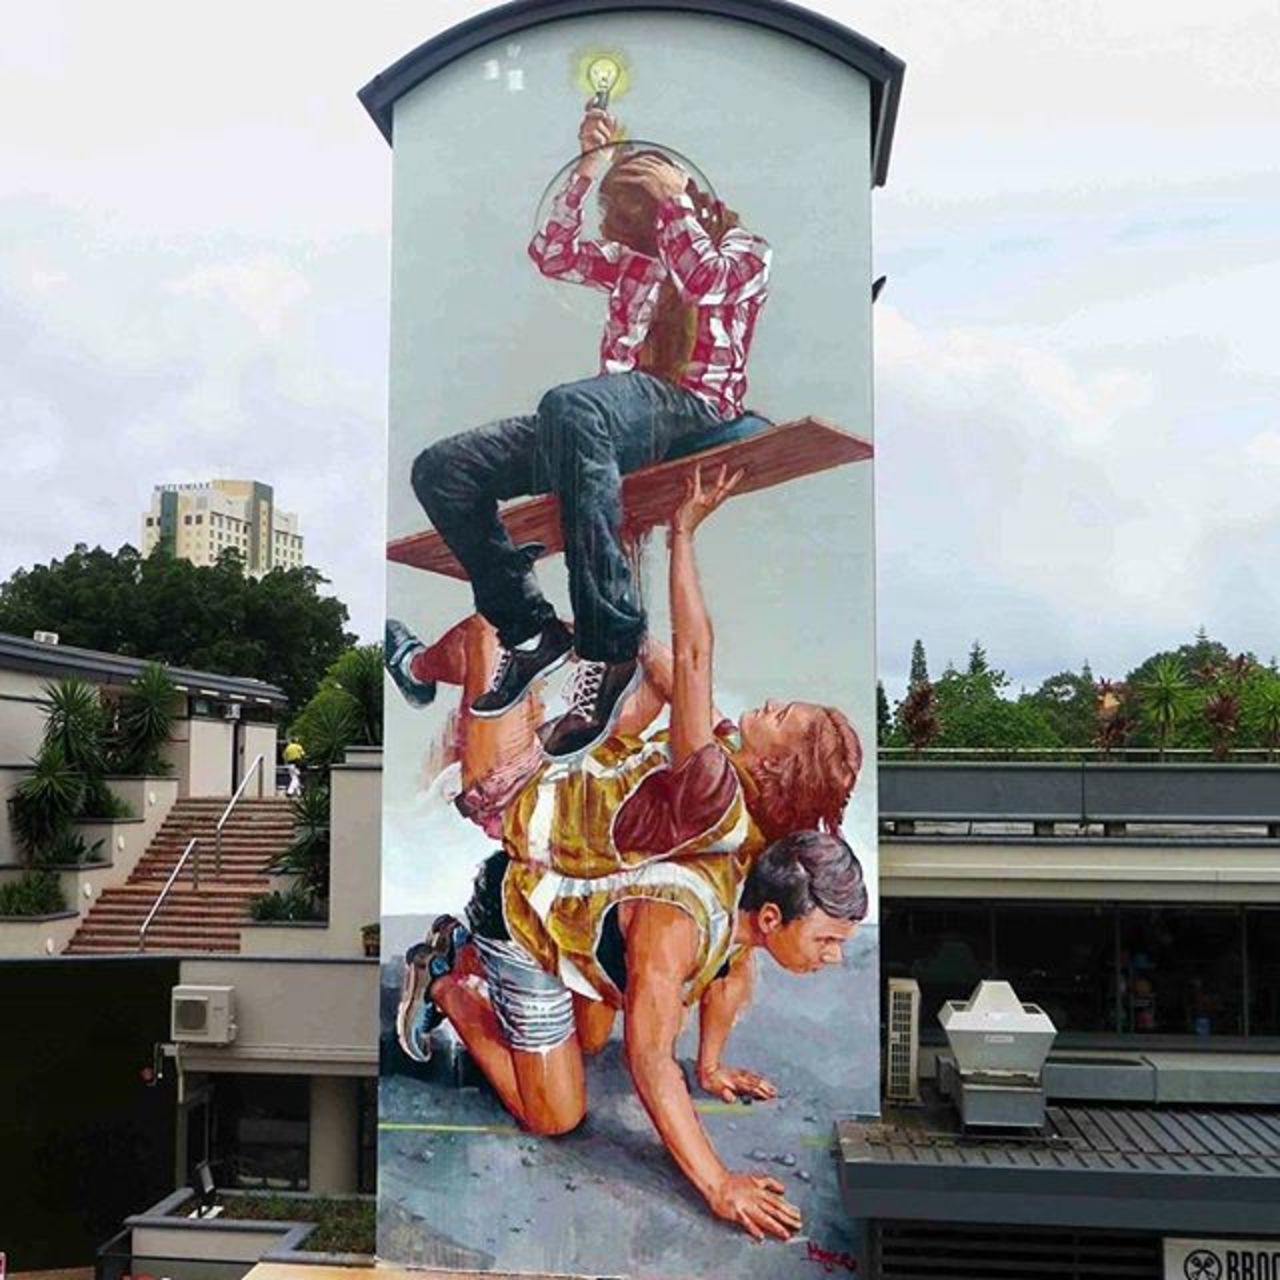 #Mural by Fintan Magee #GoldCoast #Queensland, #Australia #Streetart #urbanart #graffiti #art https://t.co/PHPBGmZkZk